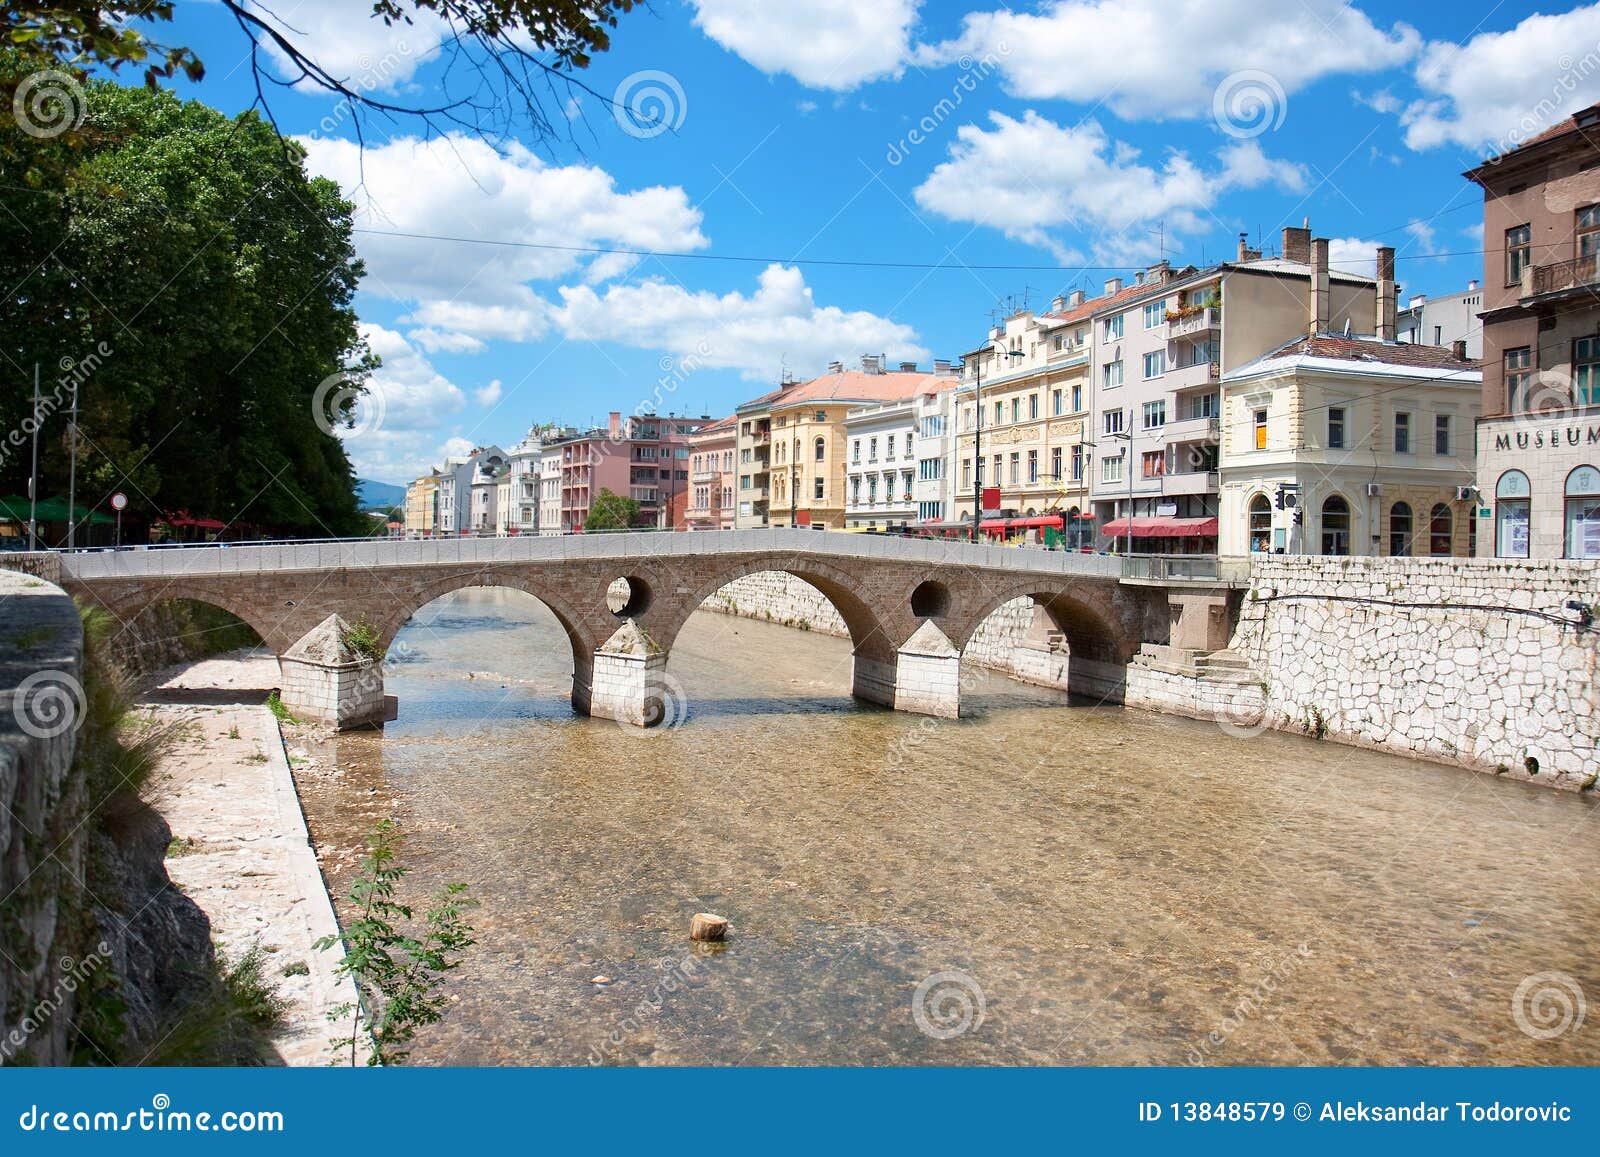 bridge on miljacka river in sarajevo